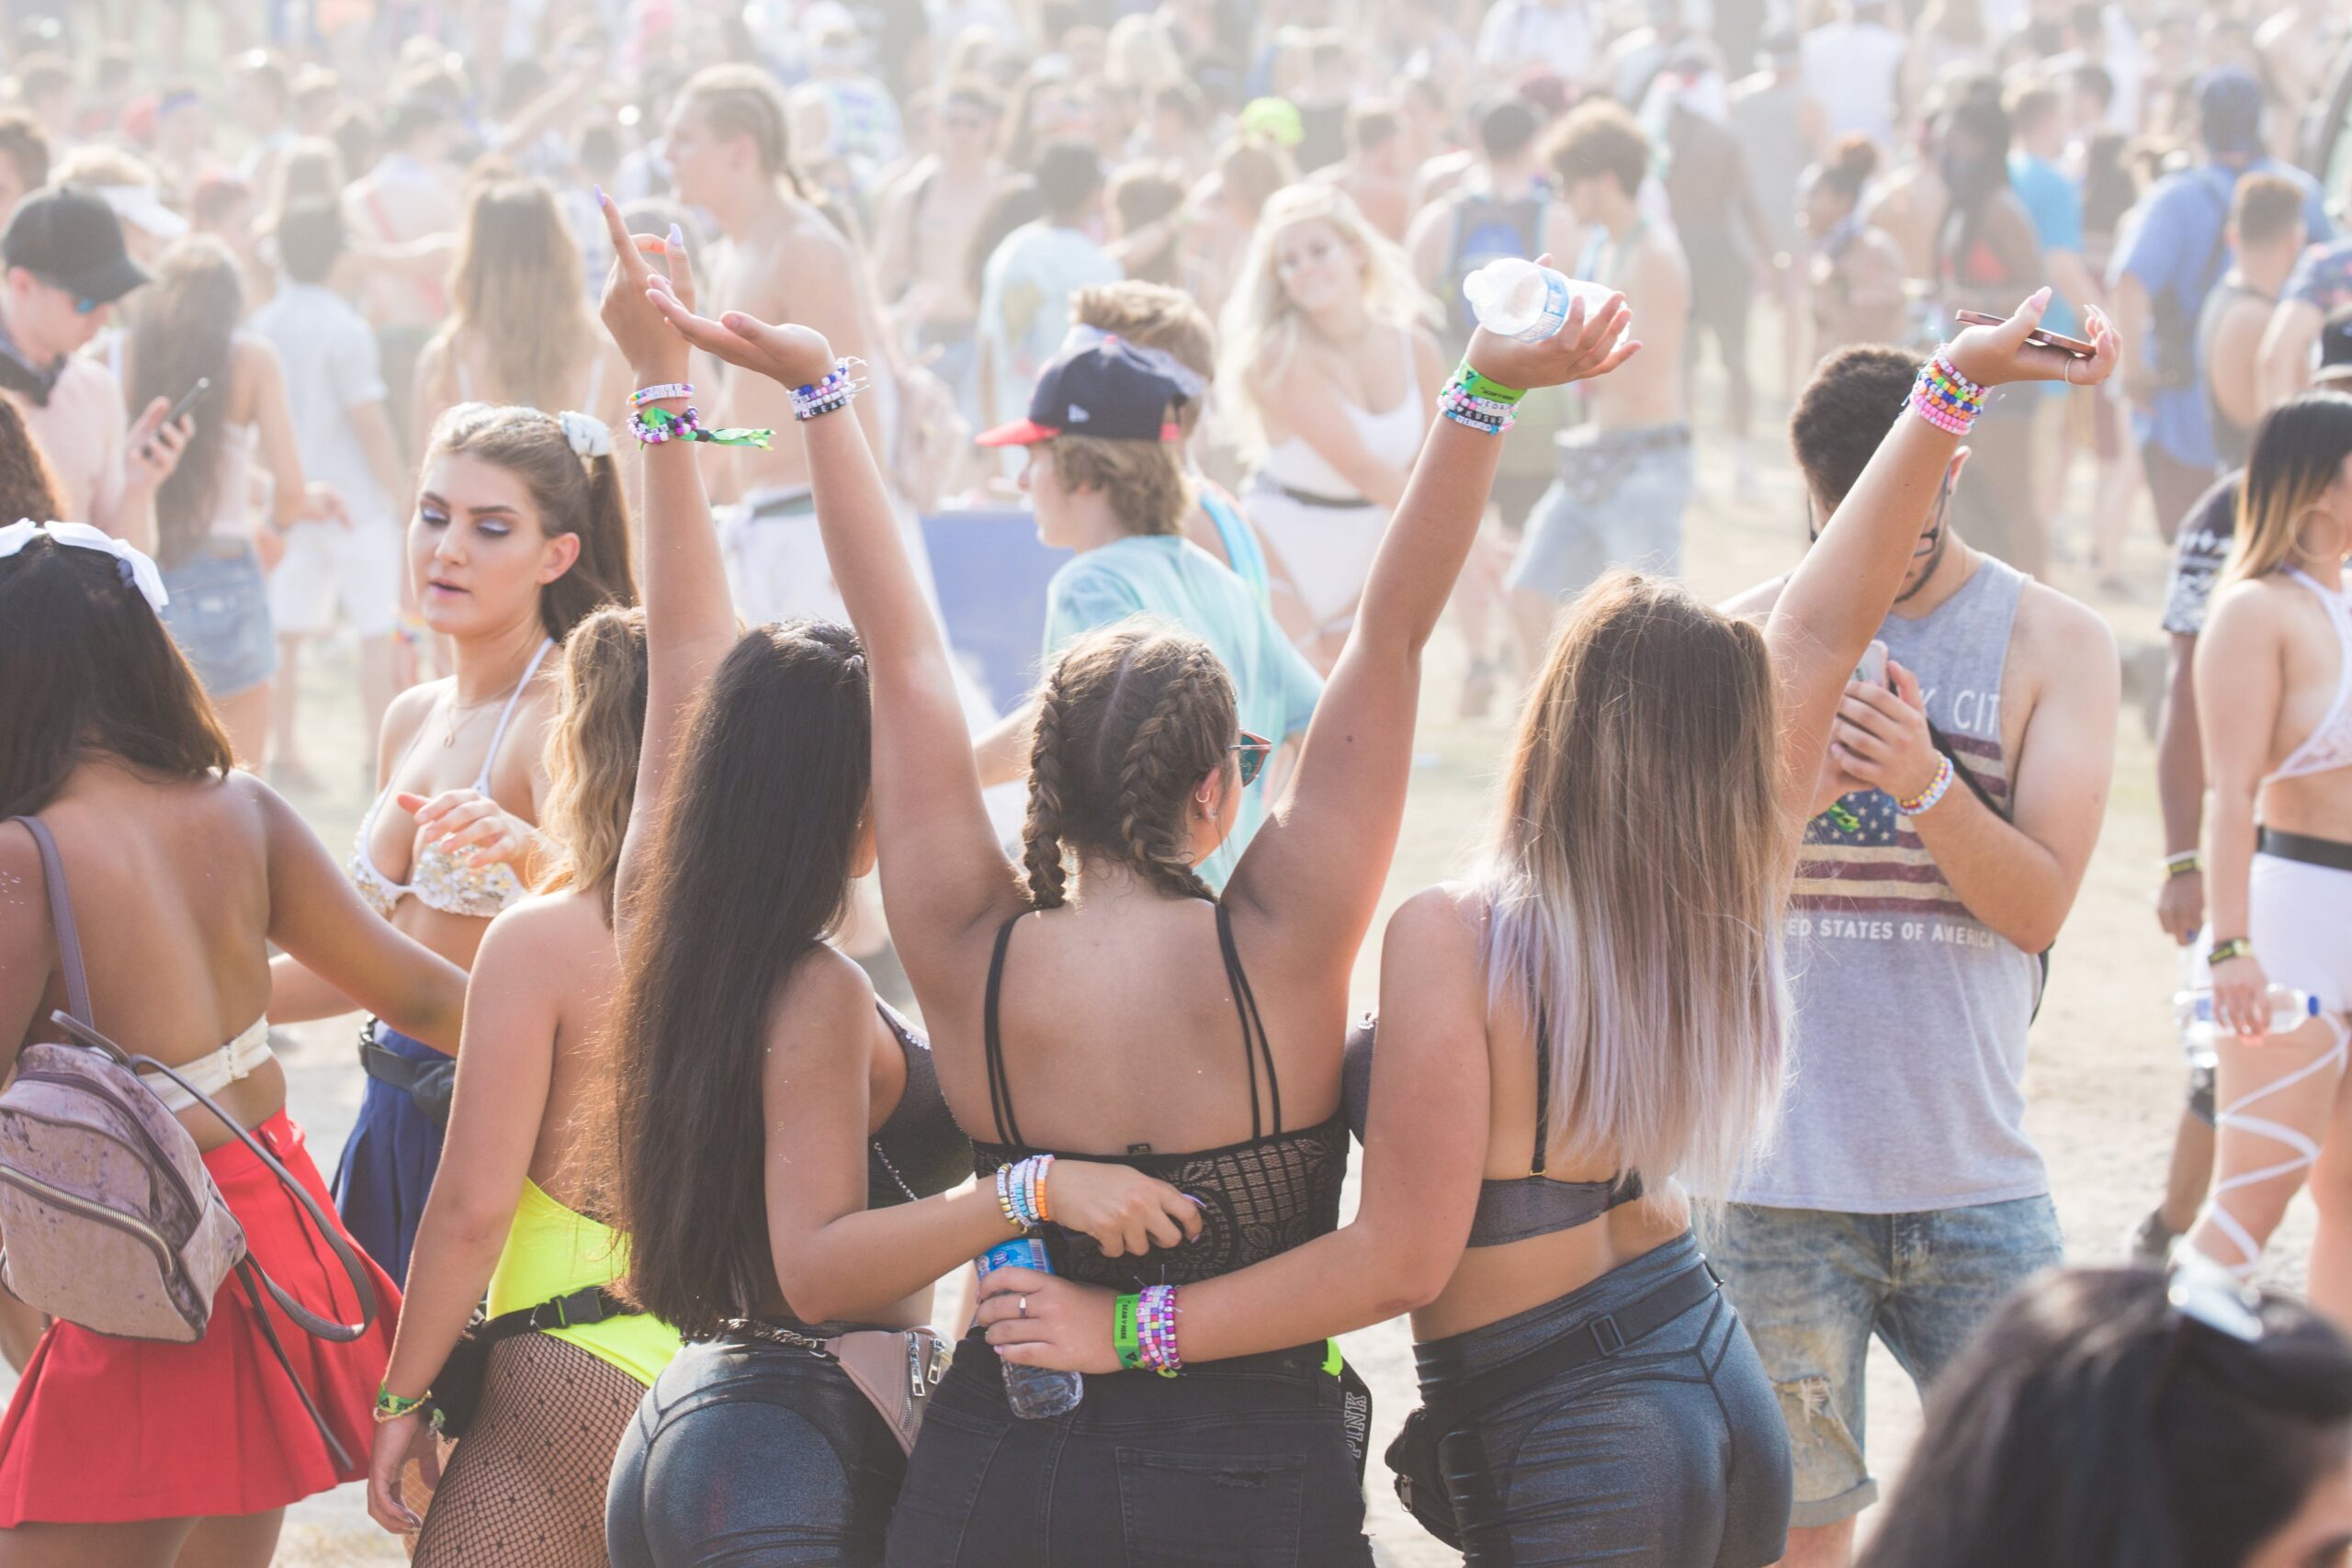 Grupo de raparigas a serem fotografadas, num festival de música